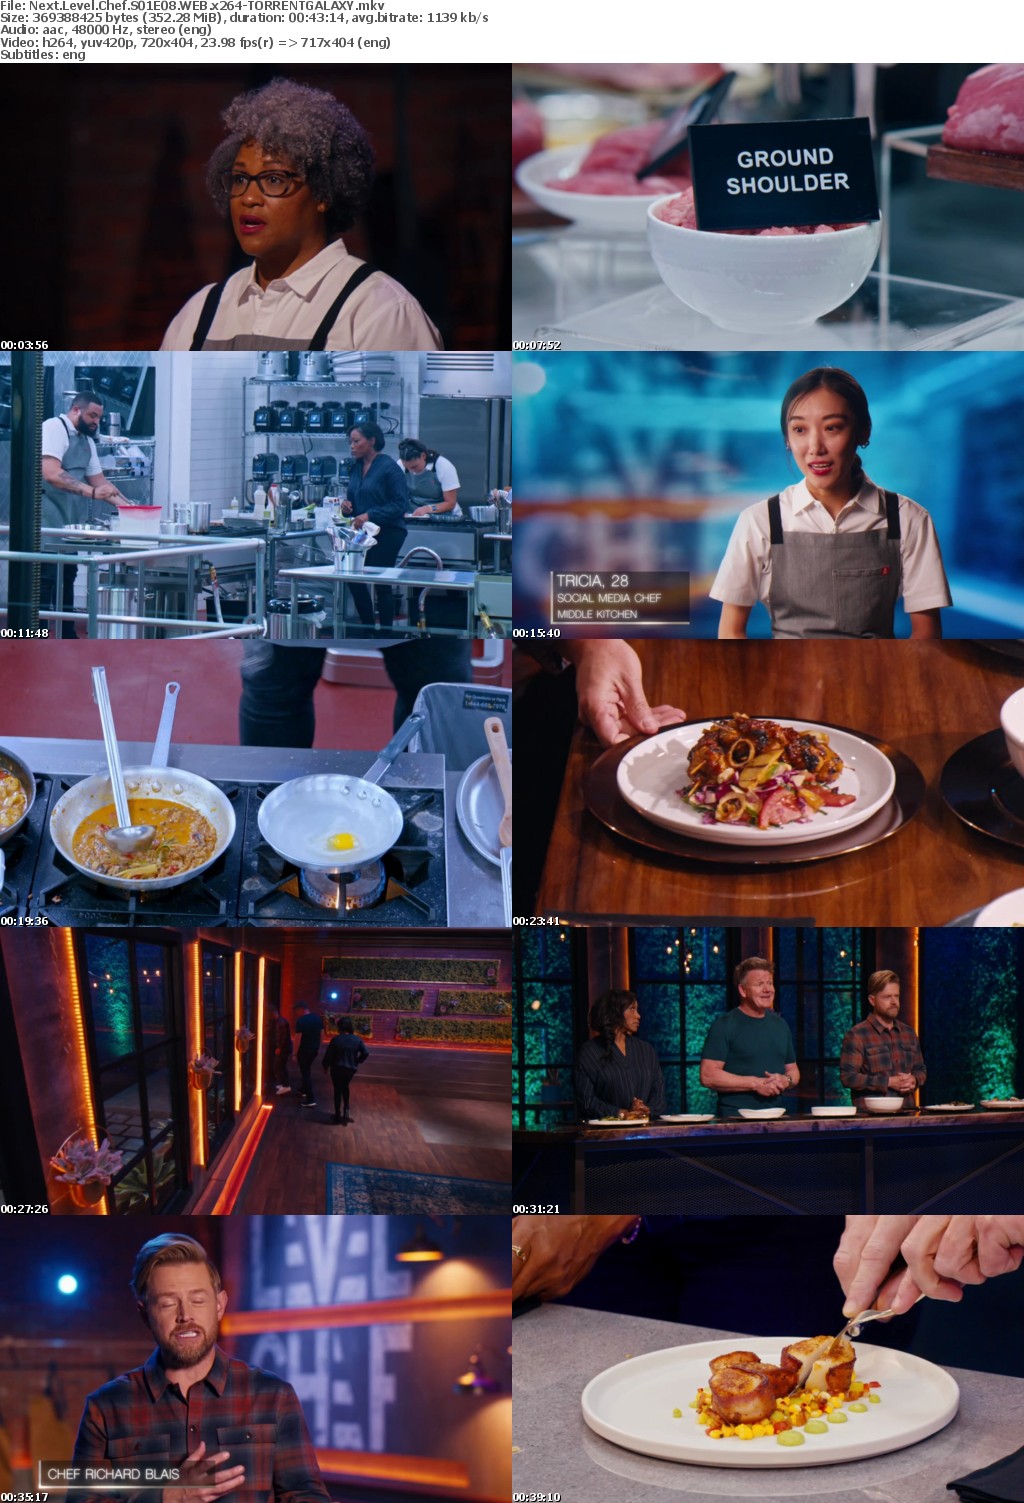 Next Level Chef S01E08 WEB x264-GALAXY